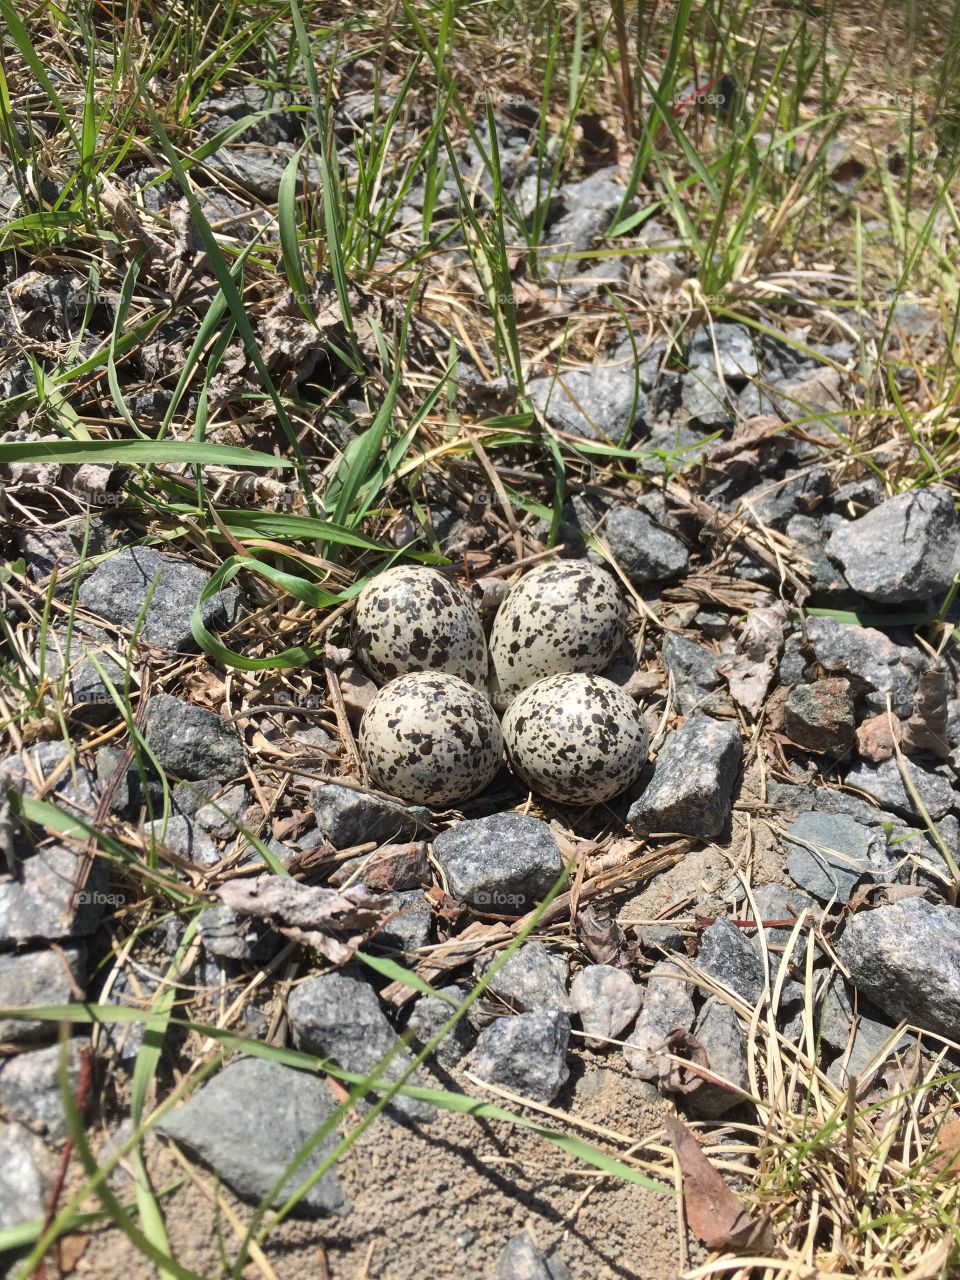 Killdeer eggs in the ground nest